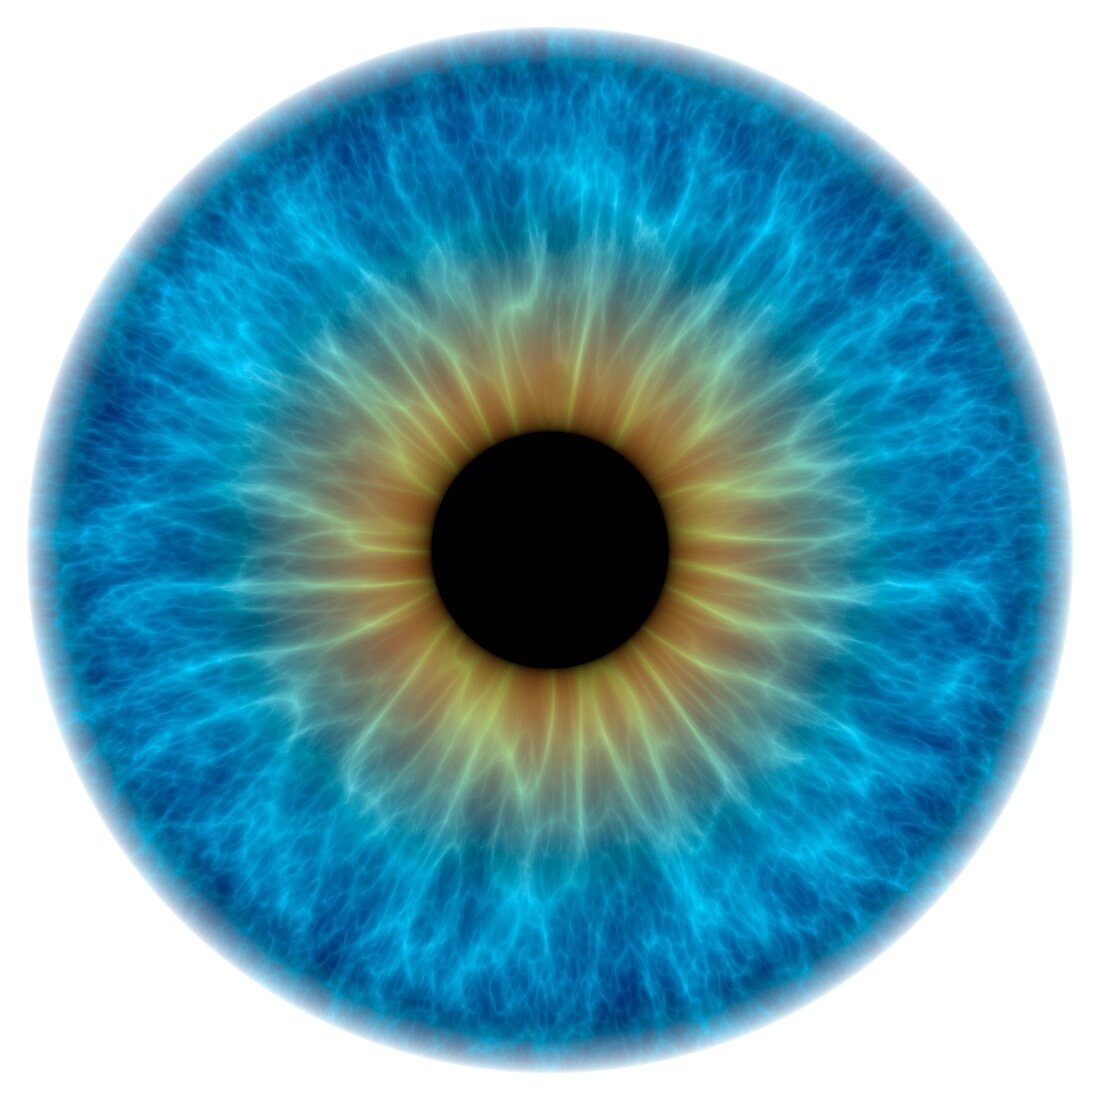 Blue eye,artwork